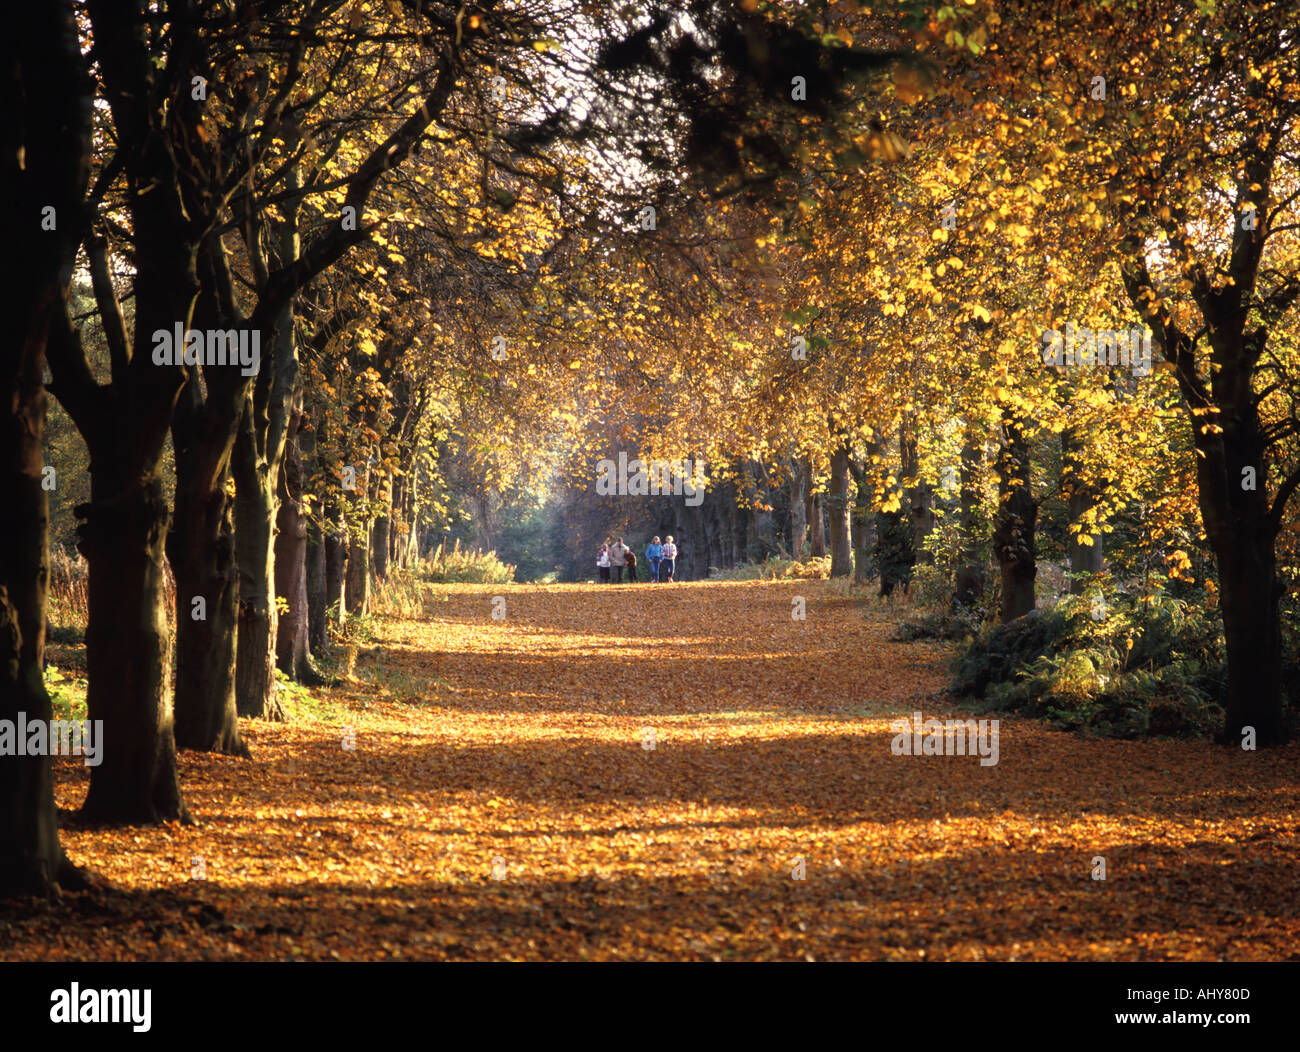 Weald Country Park Avenue der alten Rosskastanie Bäume Herbst Farbe Landschaft in der Landschaft von Essex Gruppe von Menschen zu Fuß Brentwood England Großbritannien Stockfoto